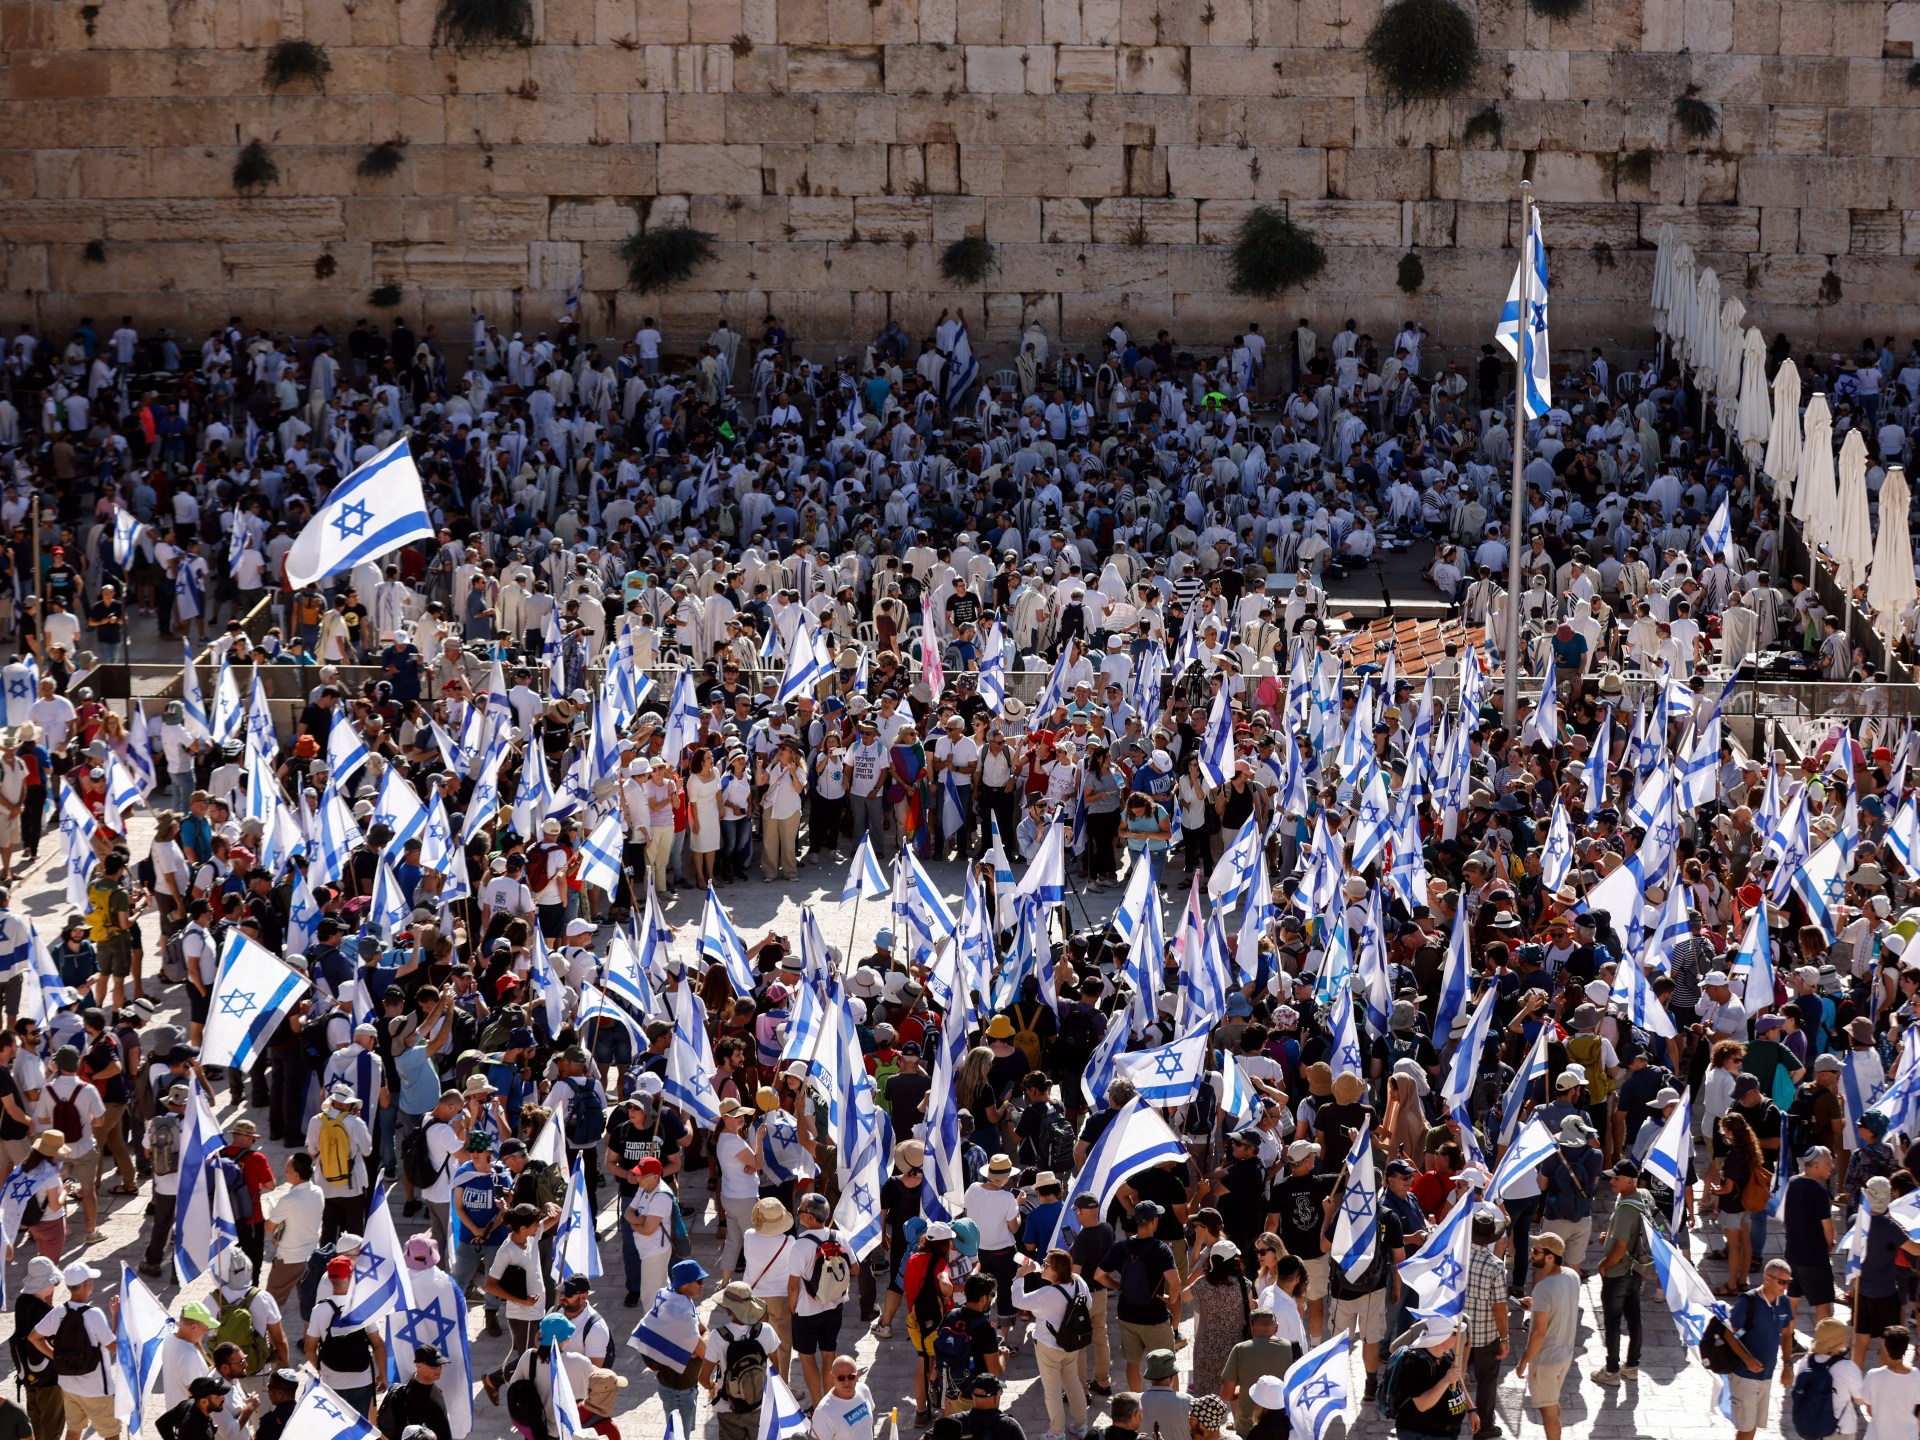 حشود كبيرة تتجمع في إسرائيل مع اقتراب التصويت على الإصلاح القضائي  أخبار بنيامين نتنياهو